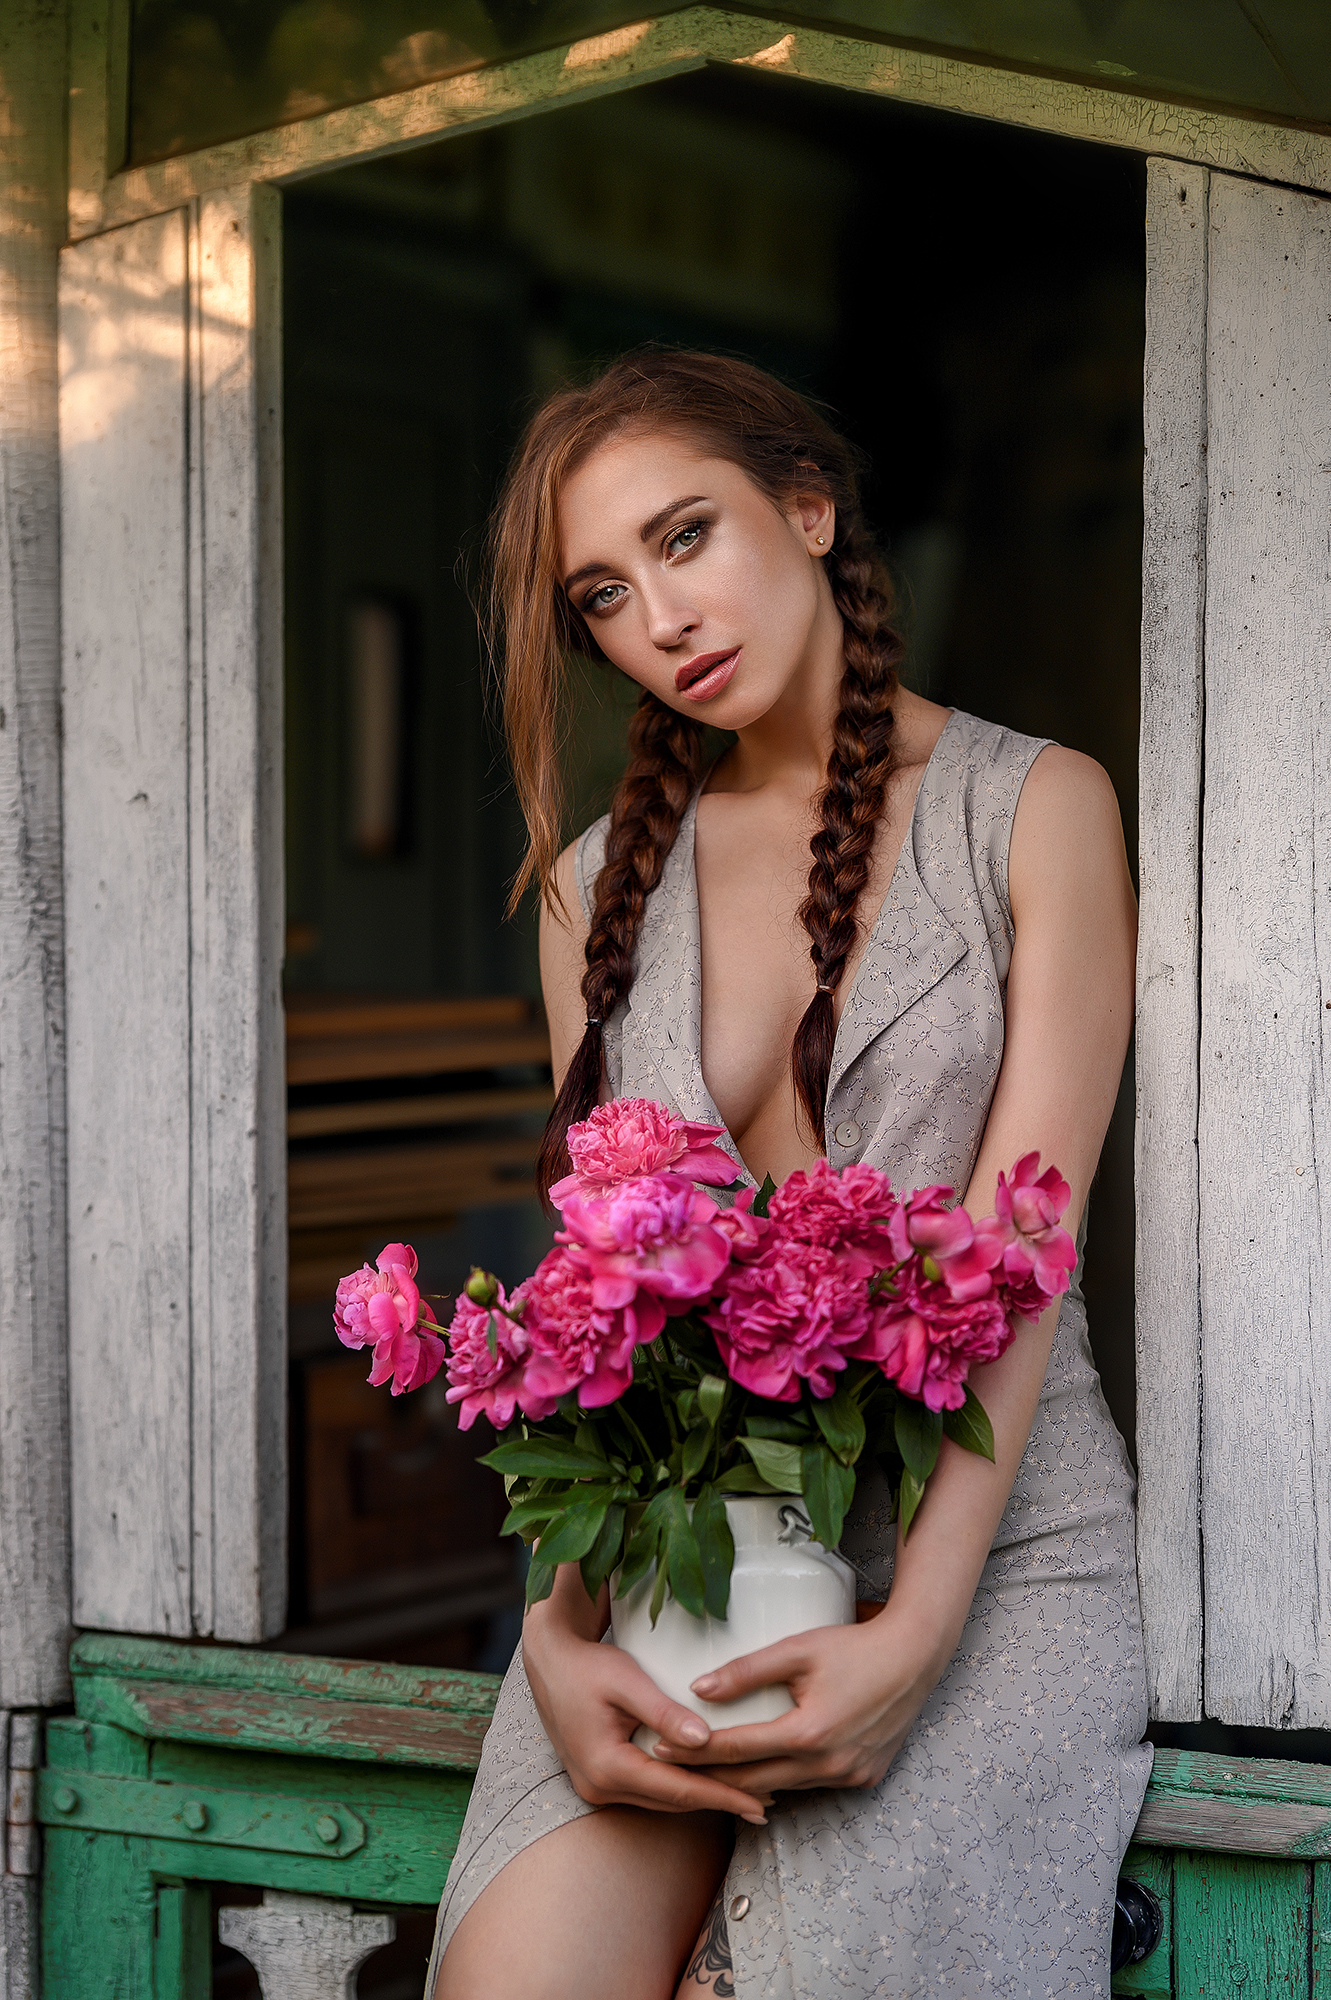 Elena Zharkova Women Brunette Long Hair Twintails Braids Flowers Pink Flowers Dress Makeup Looking A 1331x2000